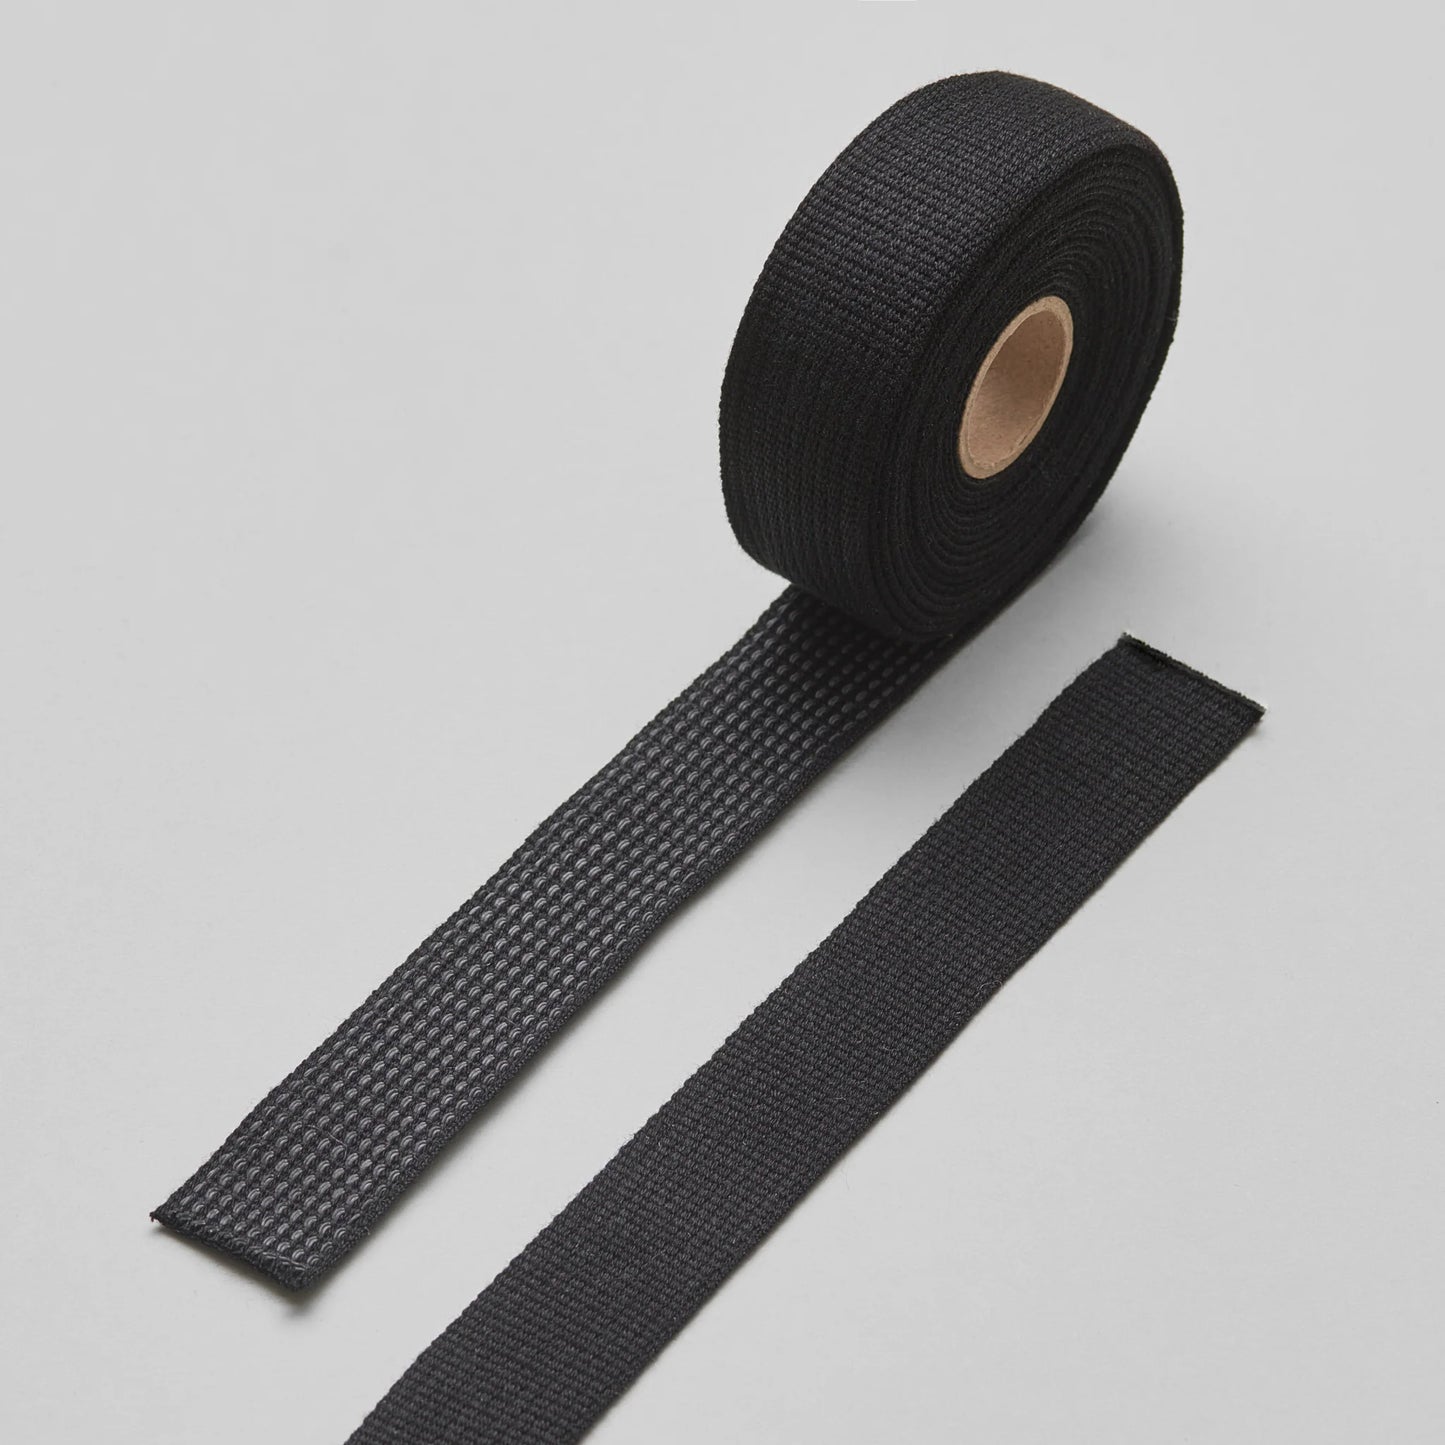 Grepp - Gripper bar tape (charcoal)